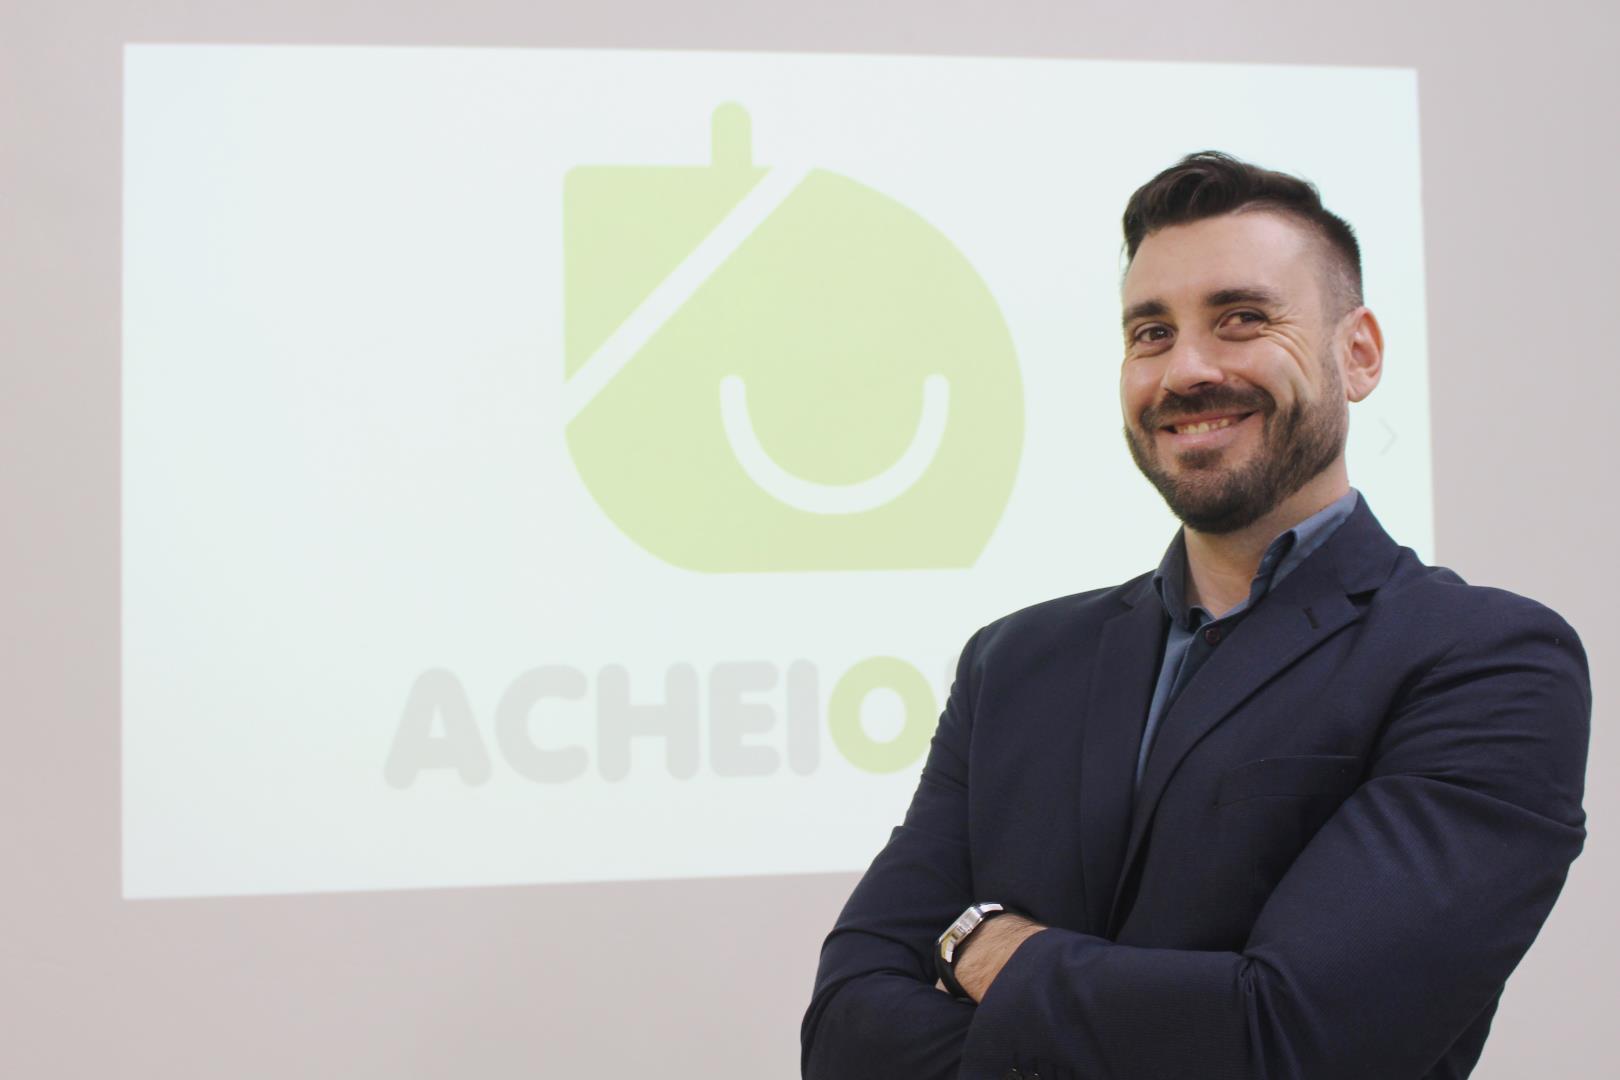 Startup de egresso da Faculdade IENH será incubada em Portugal